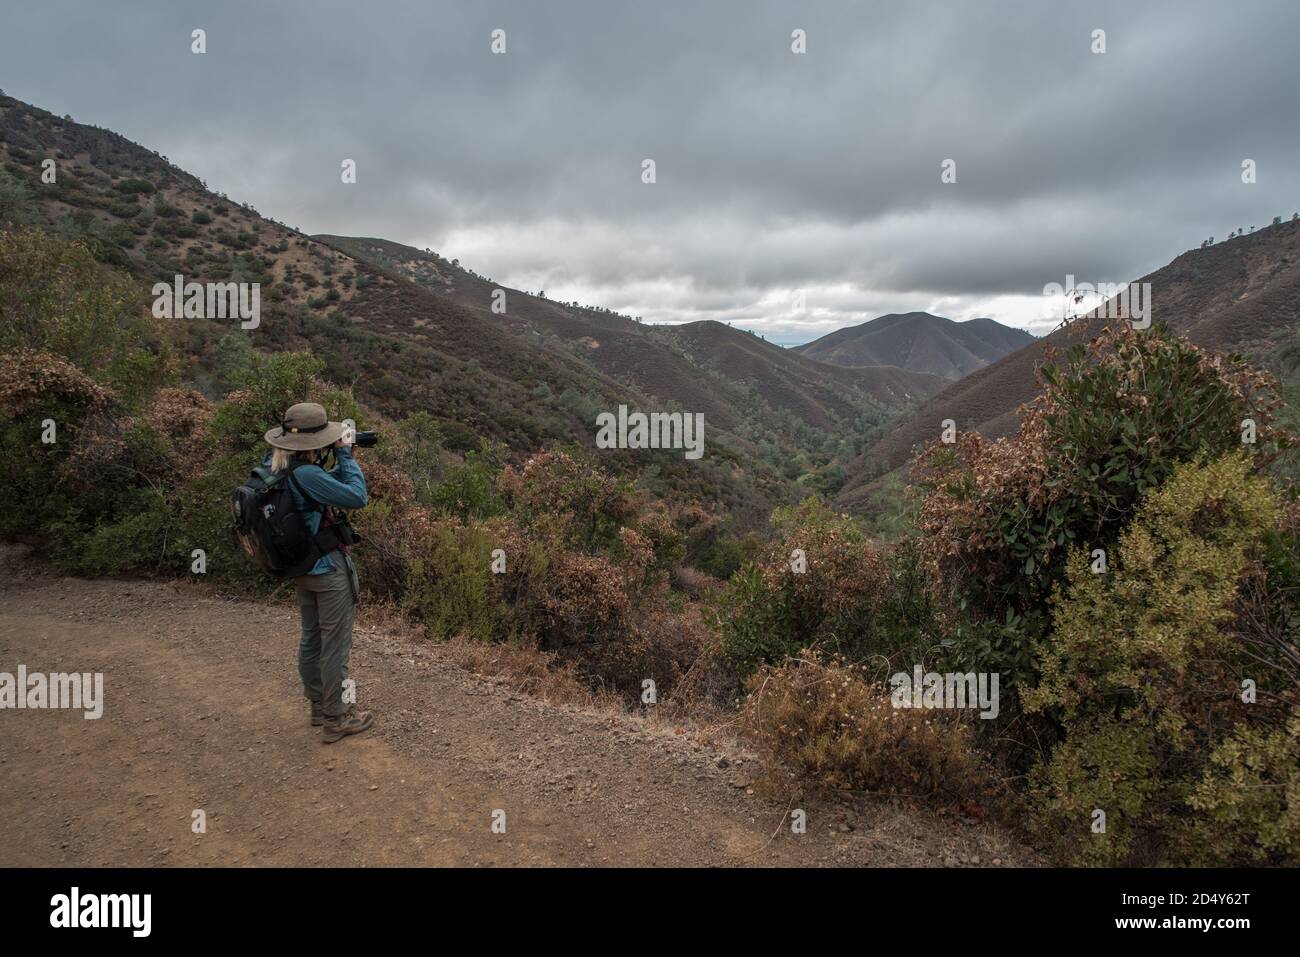 Un randonneur s'arrête pour prendre une photo d'une vallée au milieu des collines du parc national du Mont Diablo en Californie, aux États-Unis. Banque D'Images